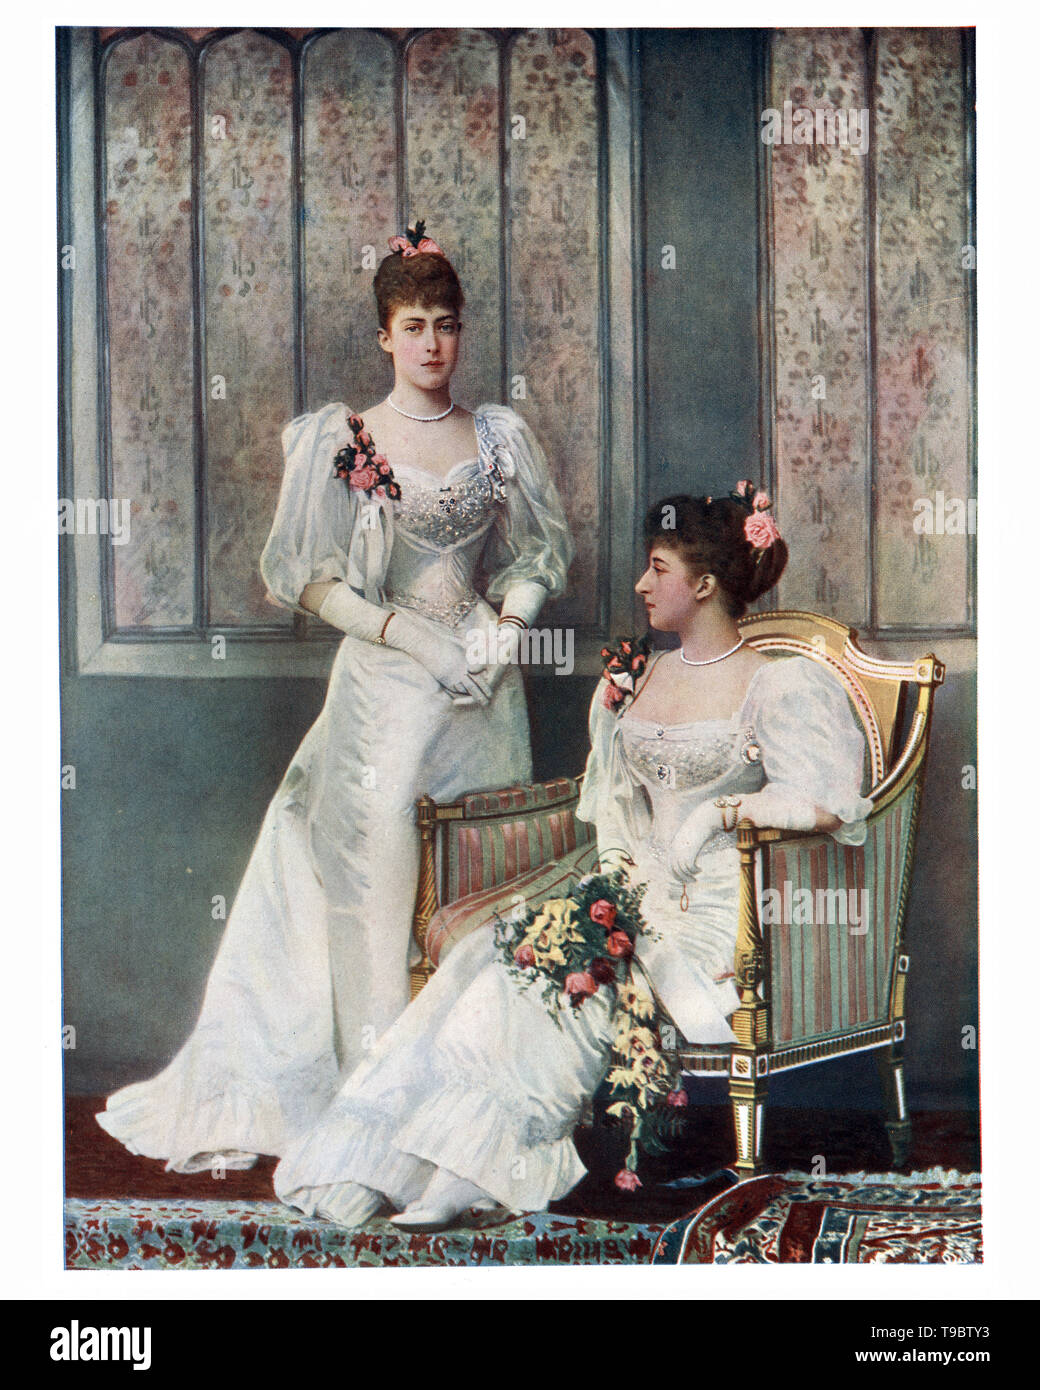 La Principessa Victoria del Regno Unito e la principessa Maud del Galles, è stata la regina della Norvegia come sposa del re Haakon vii. Foto Stock